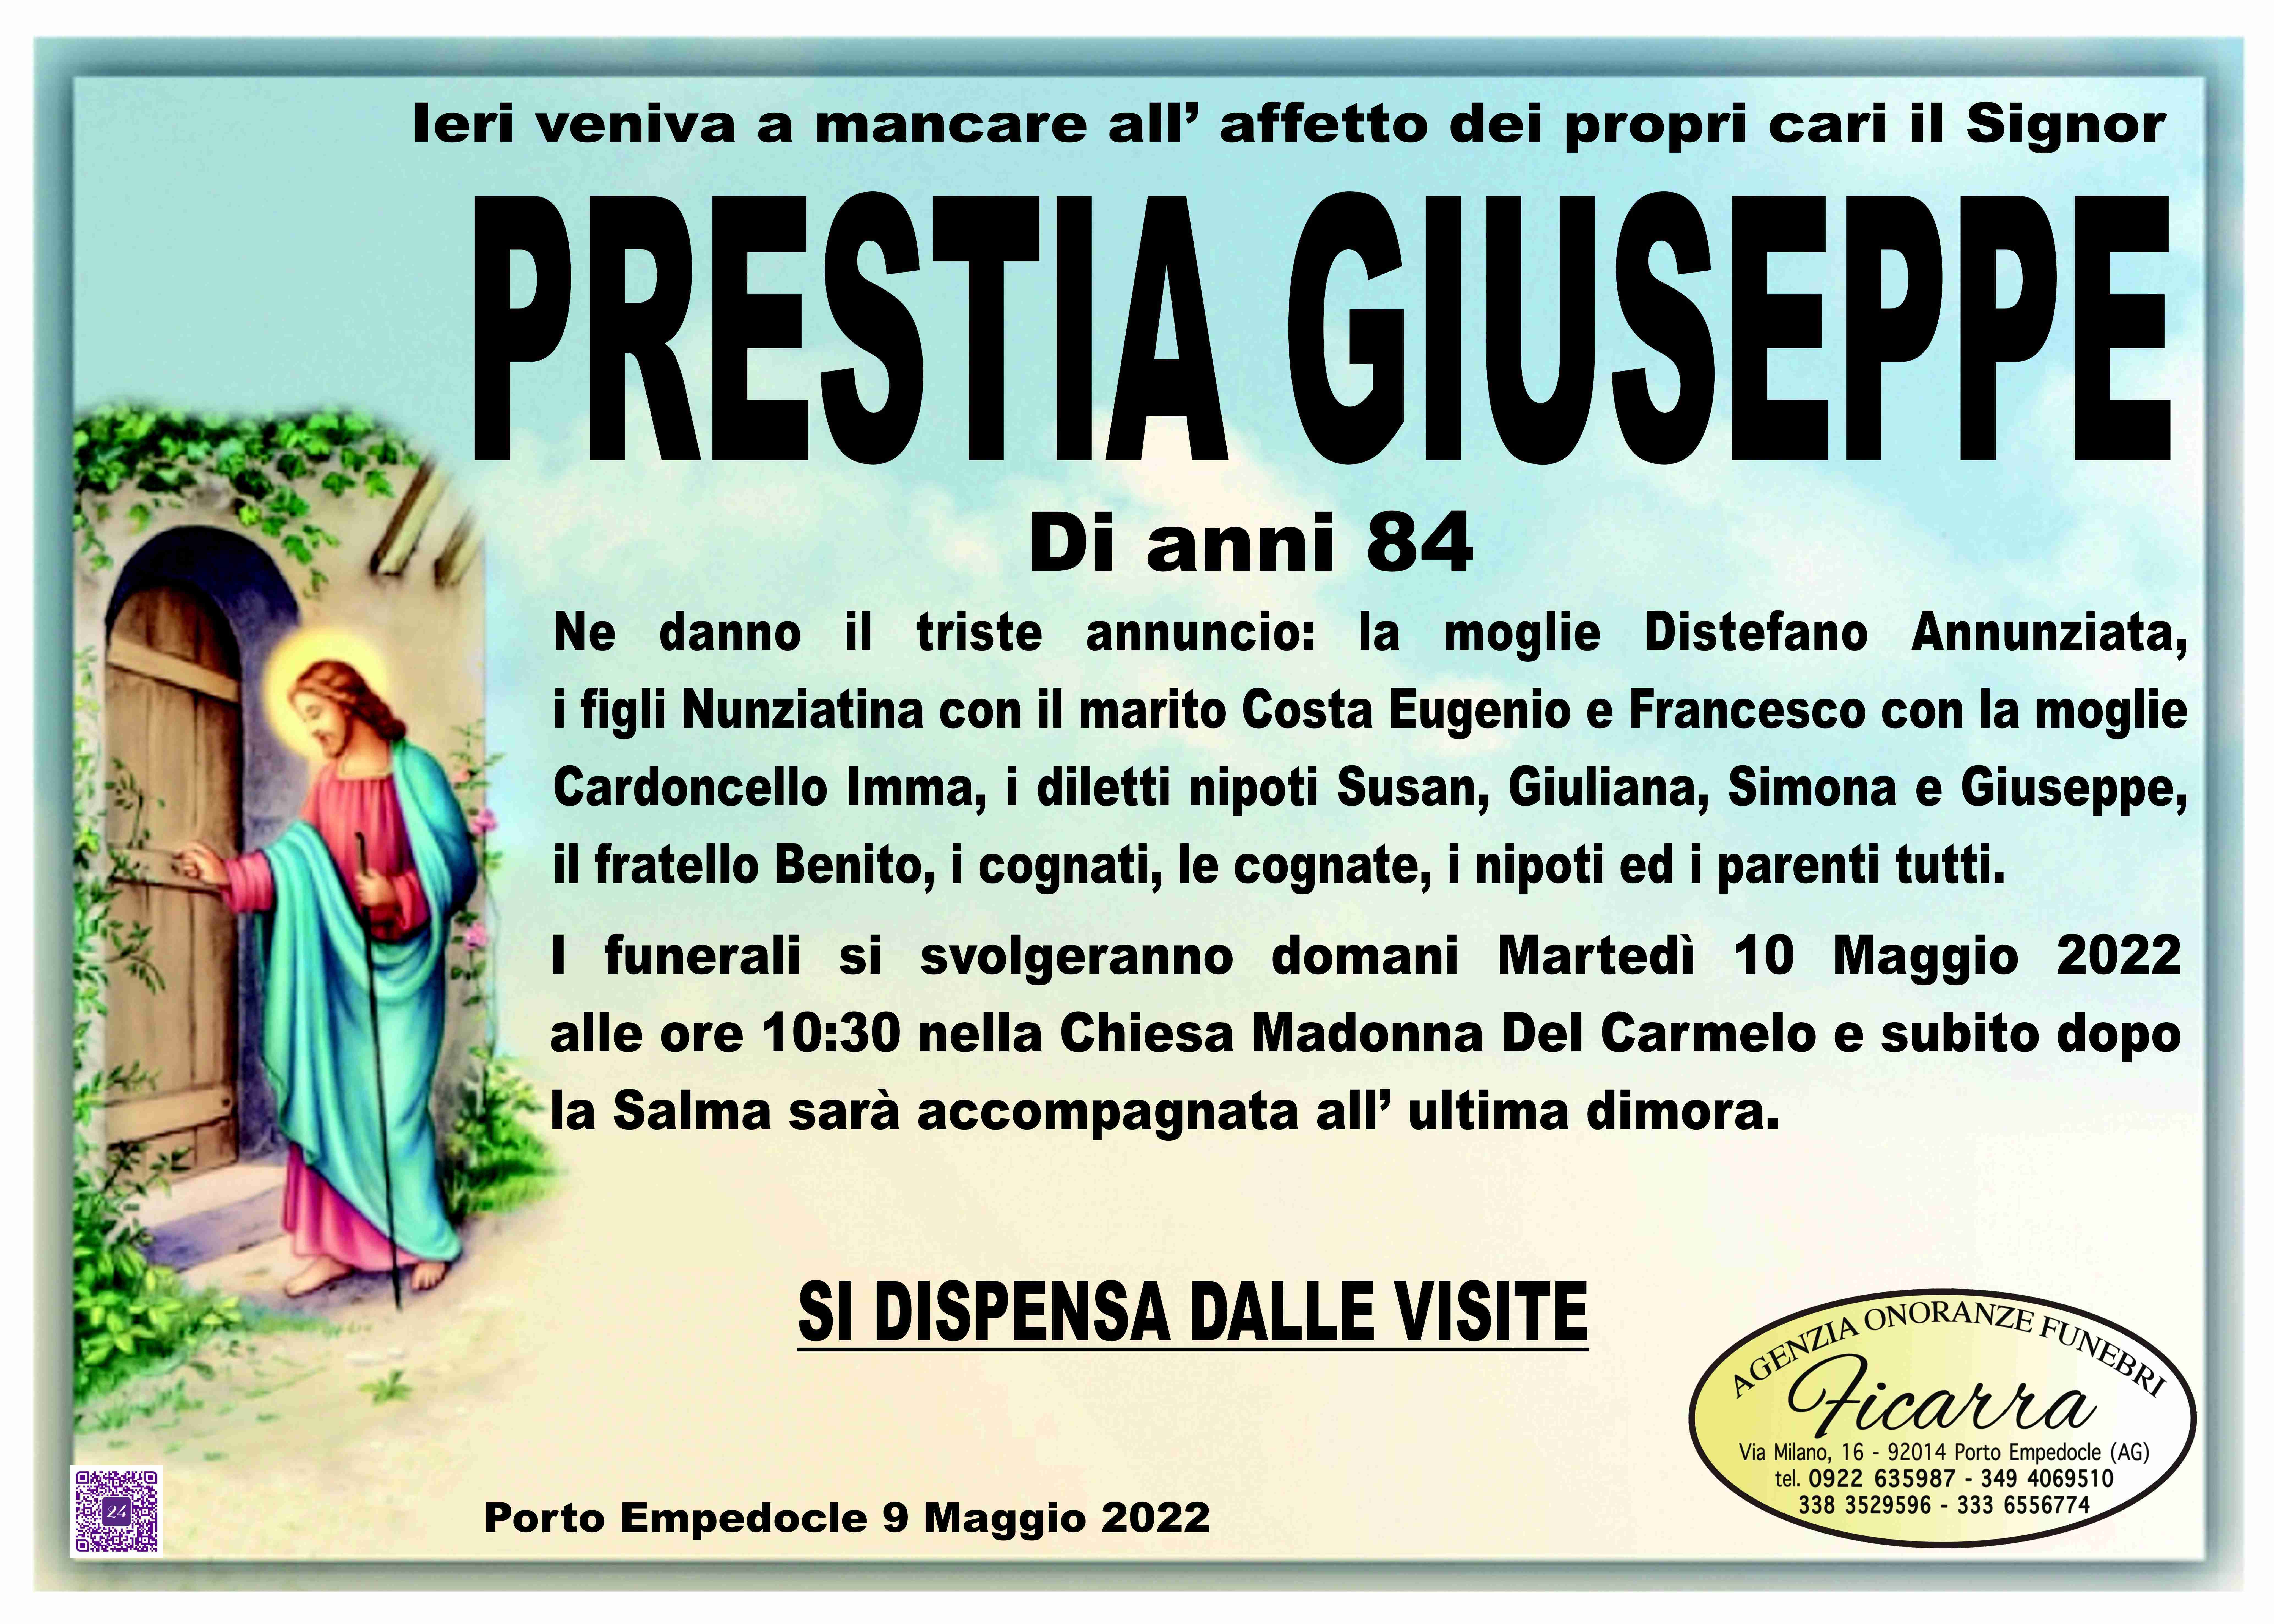 Giuseppe Prestia